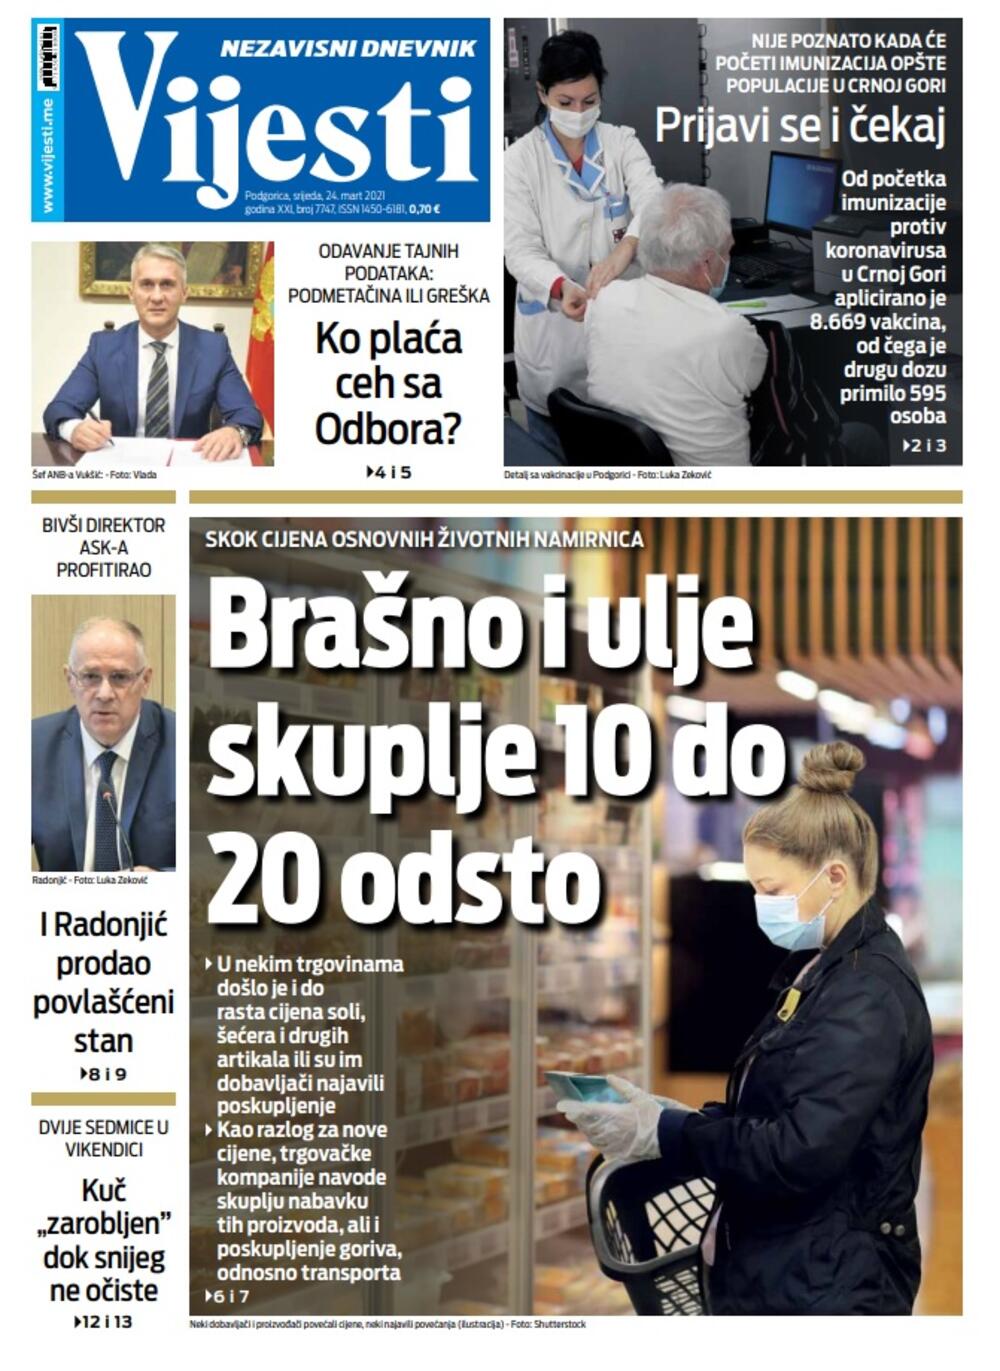 Naslovna strana "Vijesti" za srijedu 24. mart 2021. godine, Foto: Vijesti